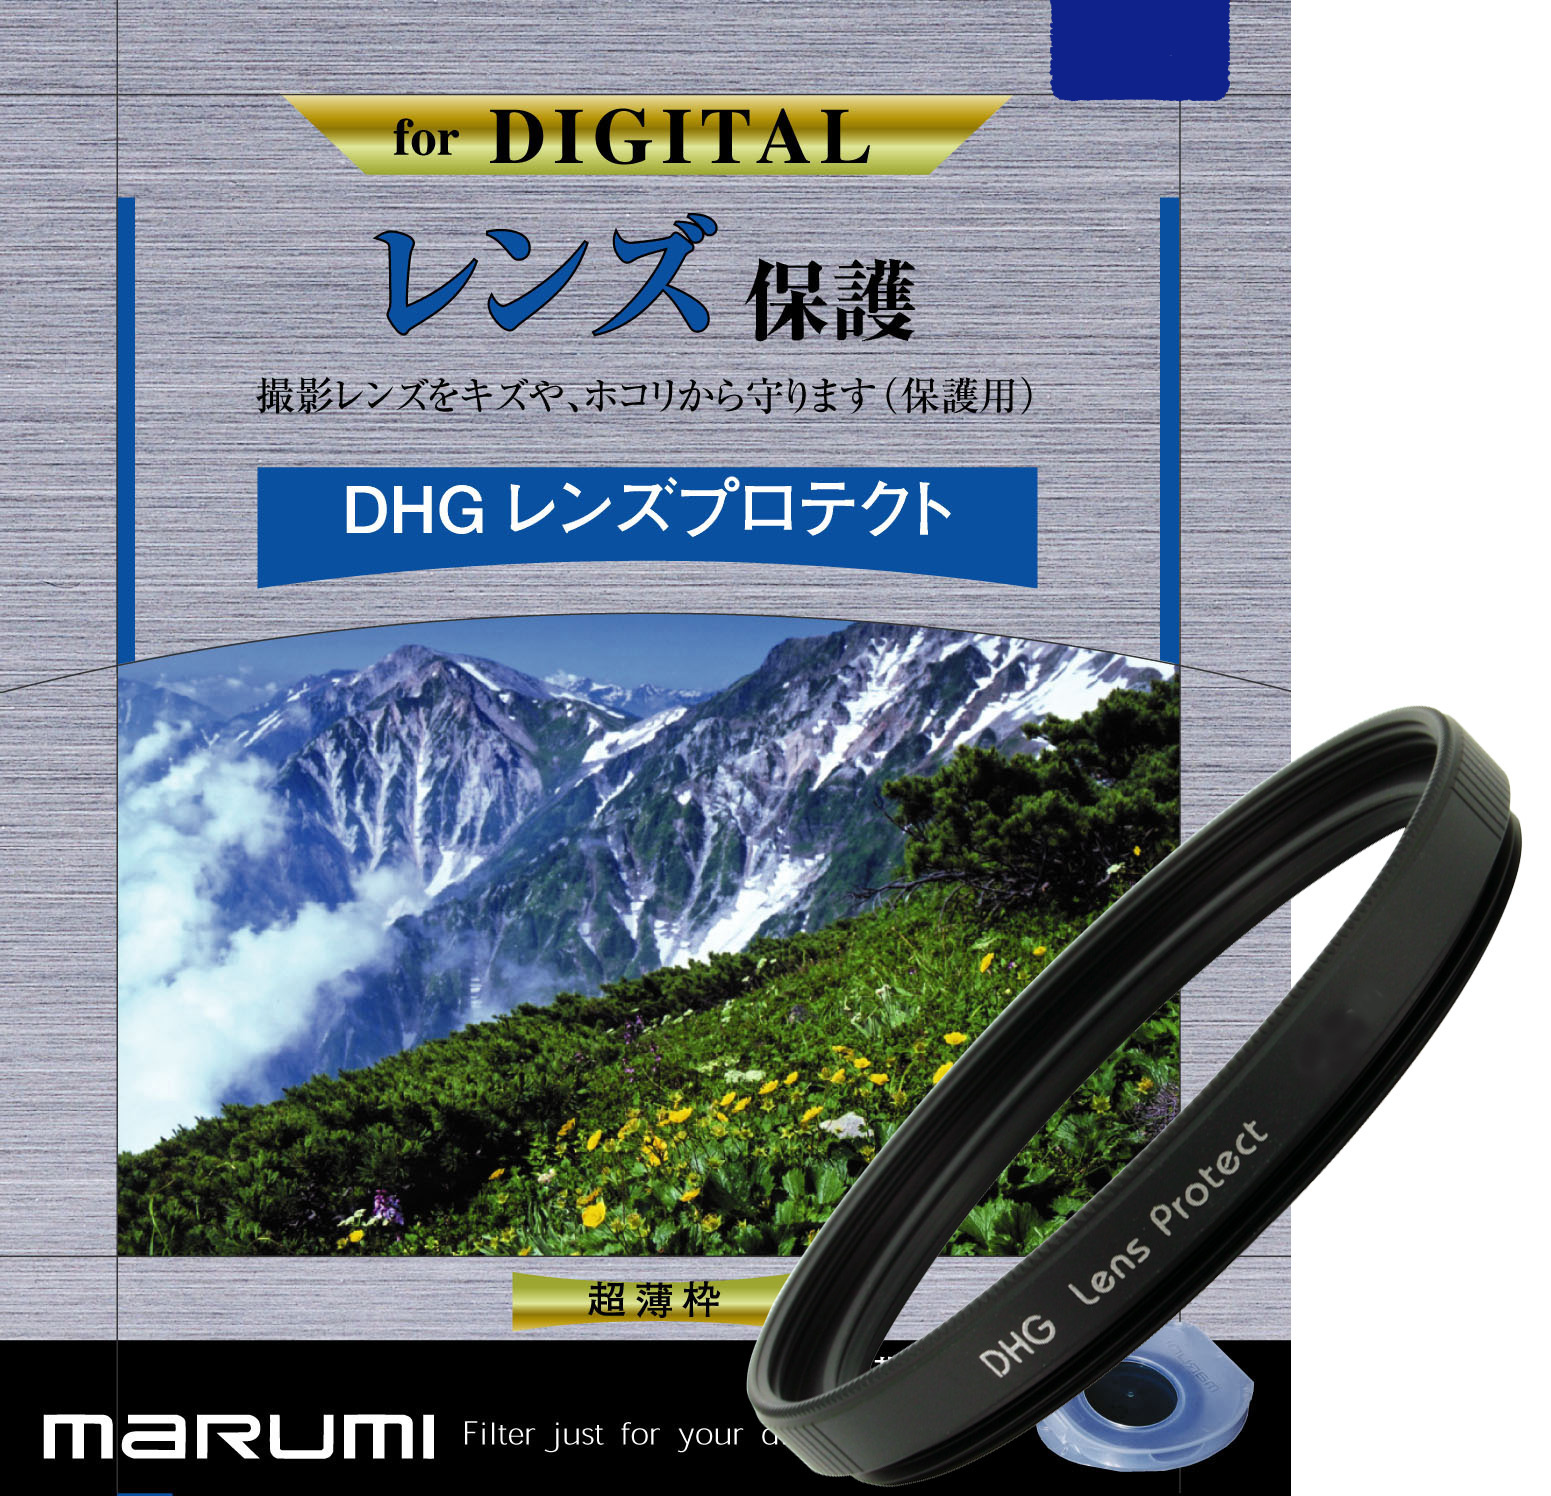 マルミ  DHG レンズプロテクト 40.5mm [プロテクター] MARUMI